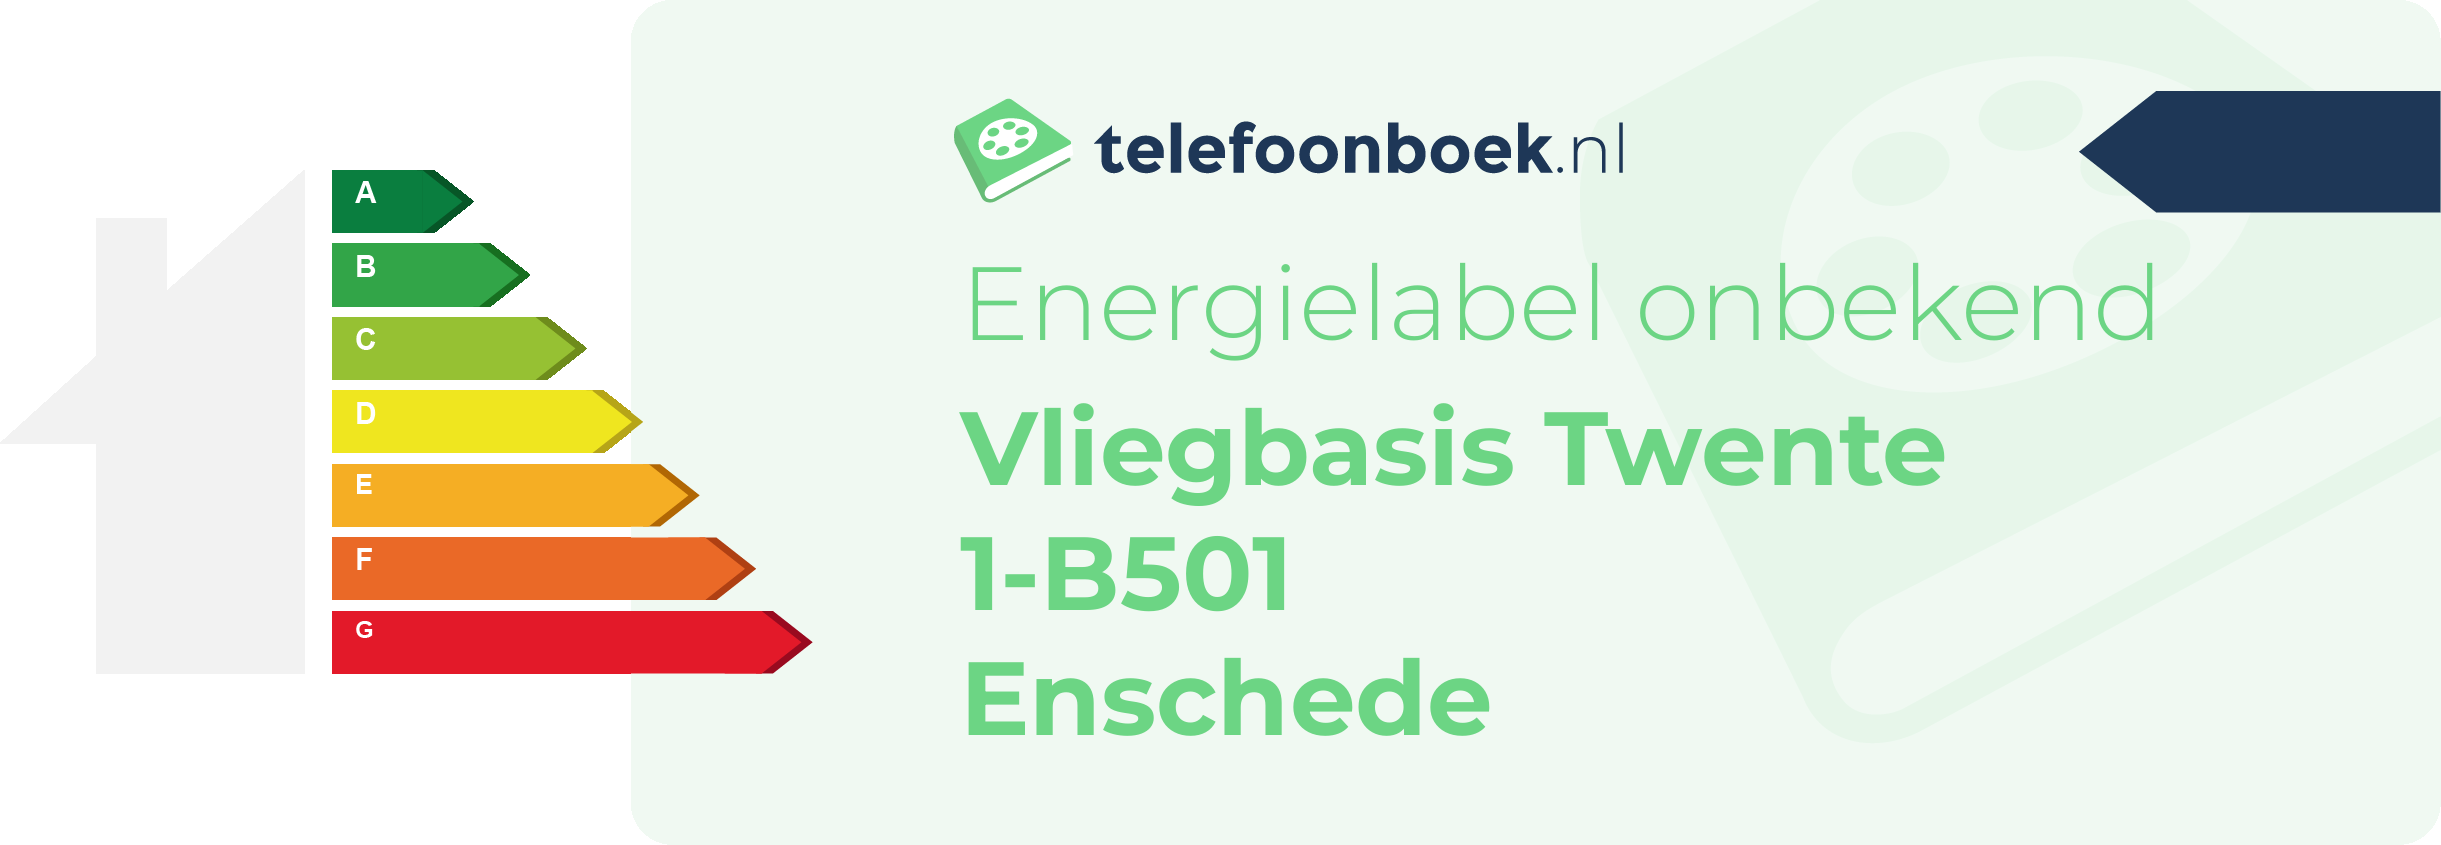 Energielabel Vliegbasis Twente 1-B501 Enschede